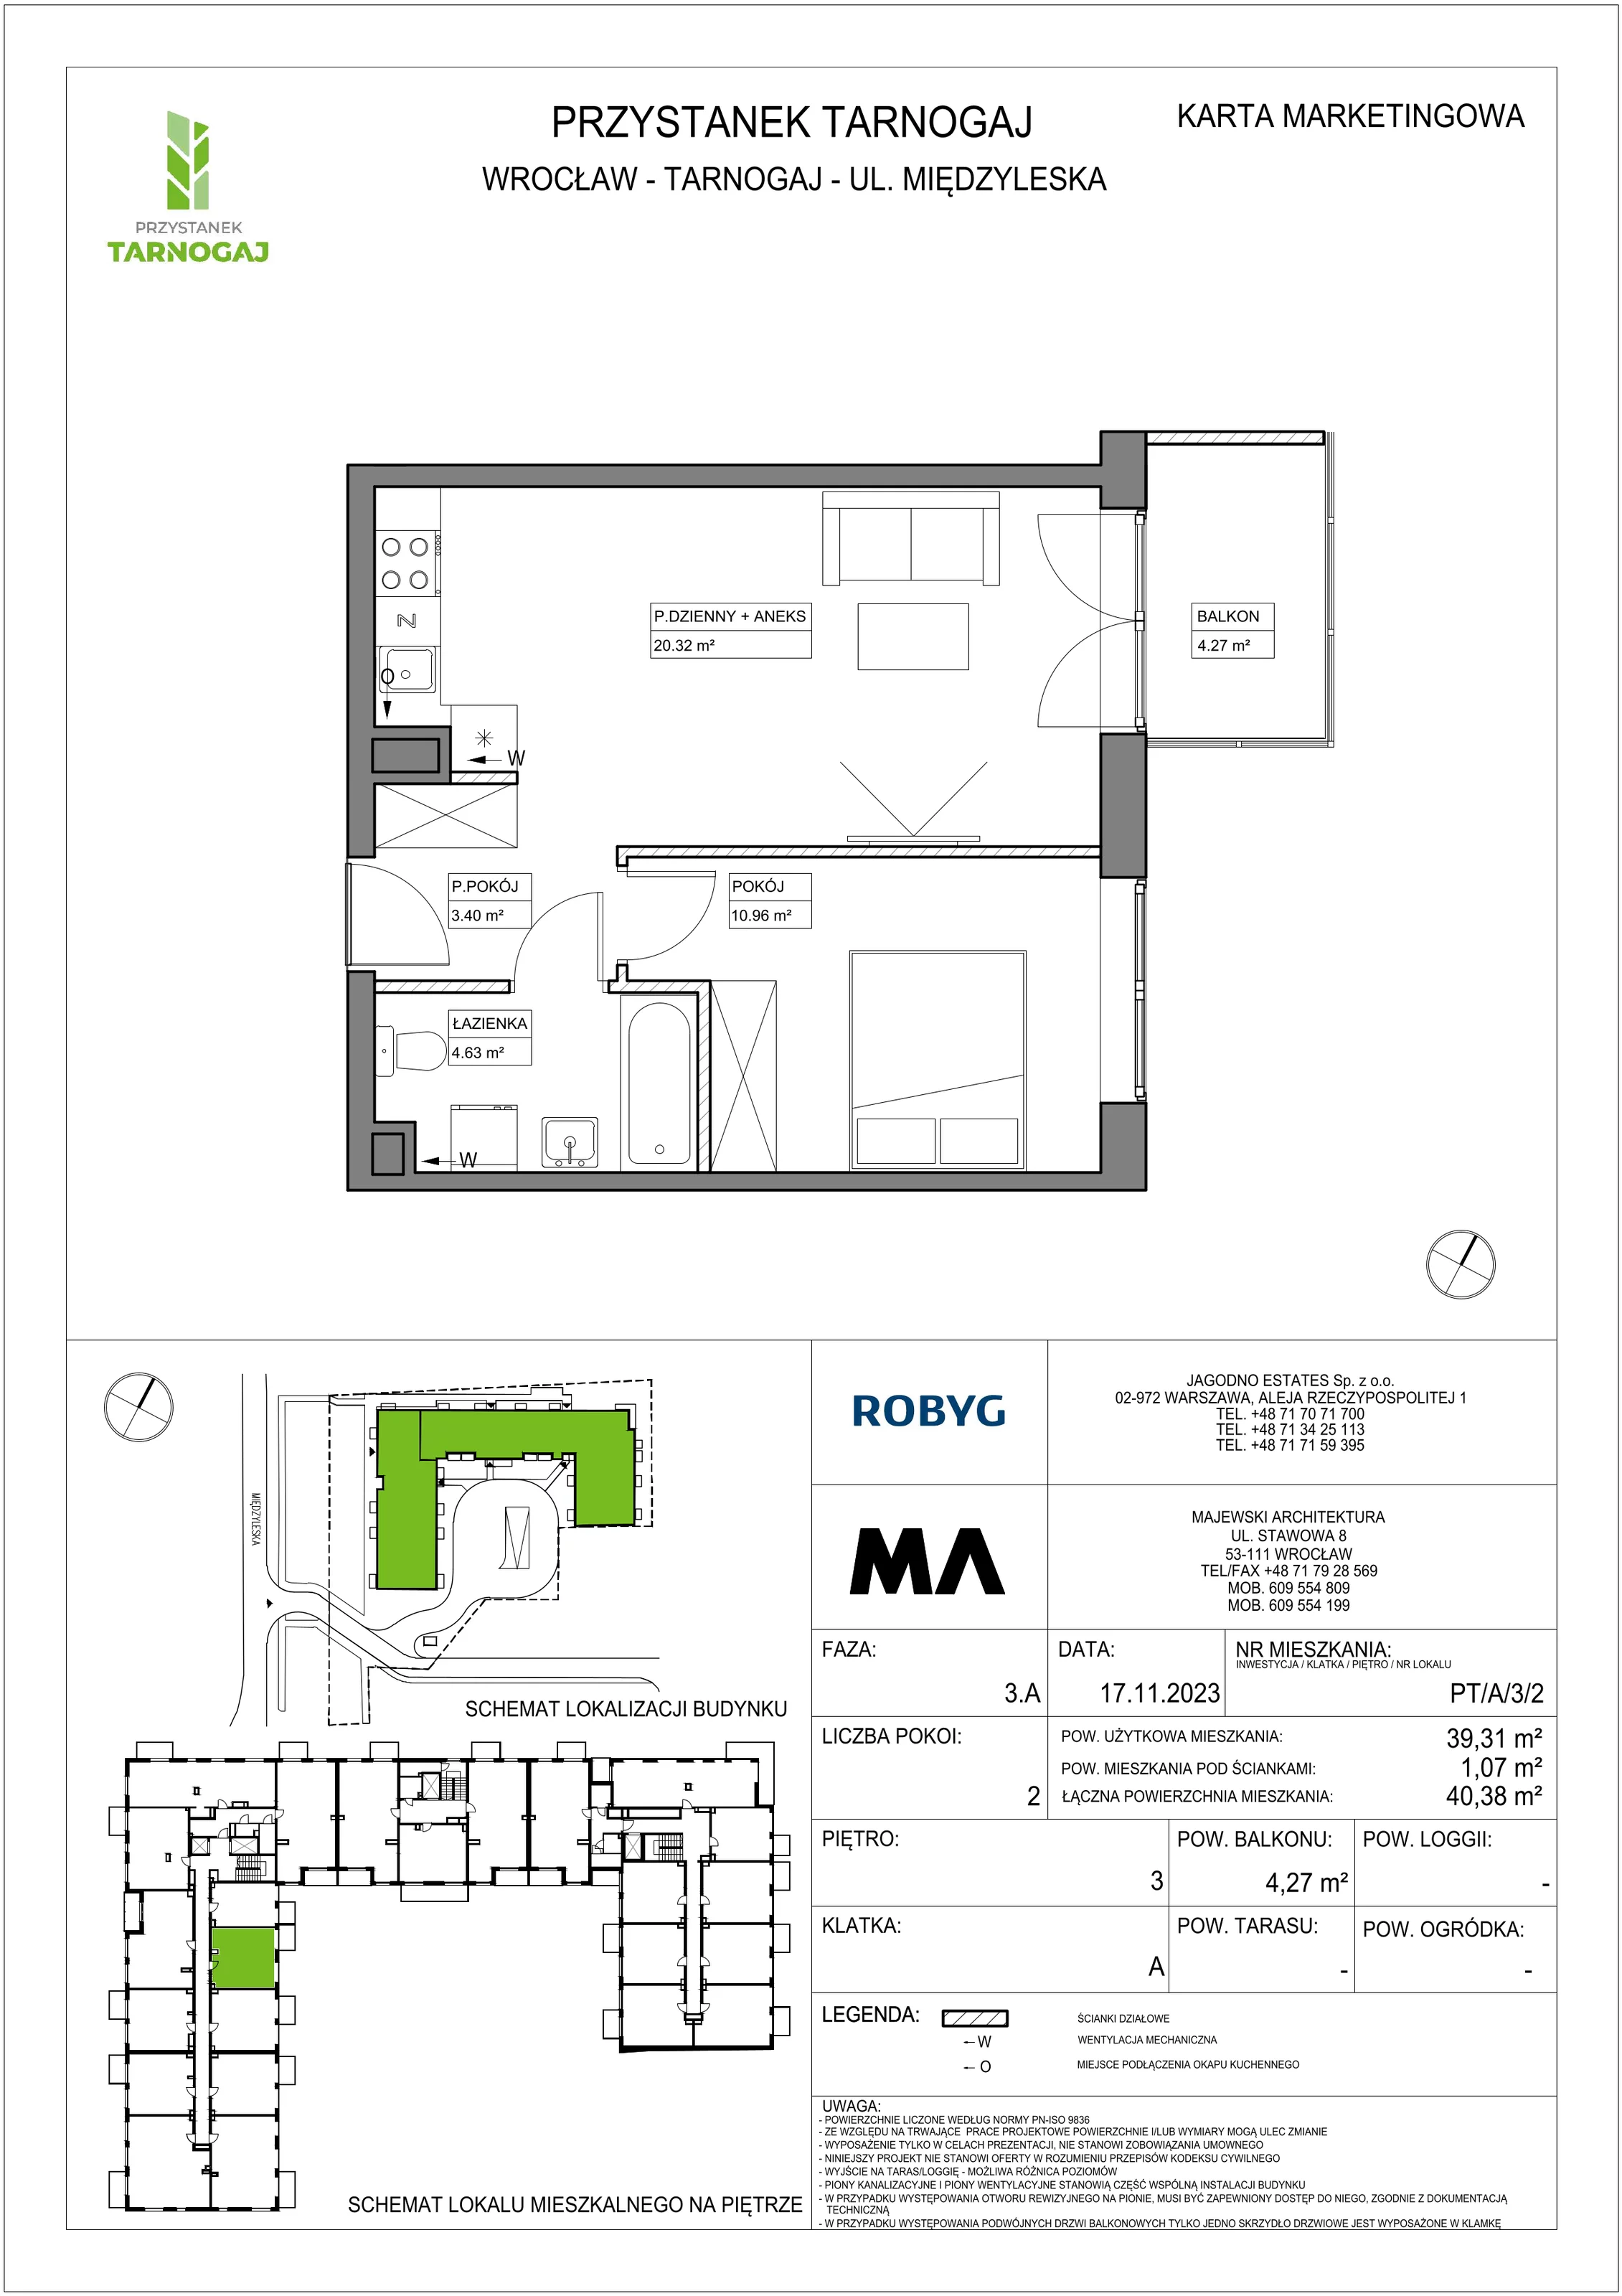 Mieszkanie 39,31 m², piętro 3, oferta nr PT/A/3/2, Przystanek Tarnogaj, Wrocław, Tarnogaj, Krzyki, ul. Międzyleska / Gazowa